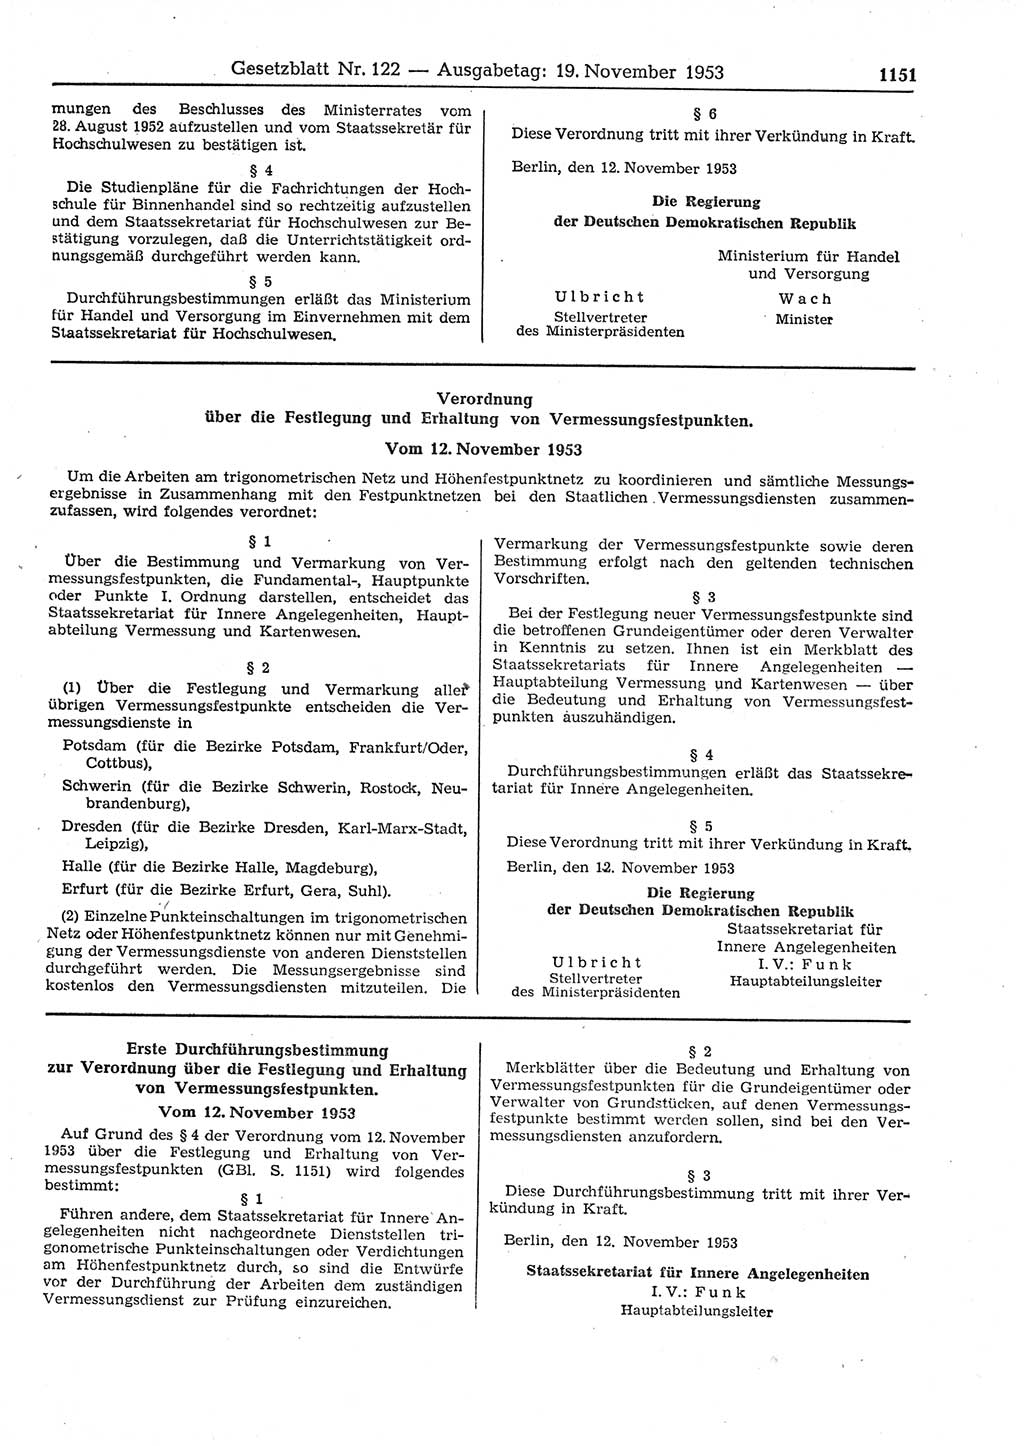 Gesetzblatt (GBl.) der Deutschen Demokratischen Republik (DDR) 1953, Seite 1151 (GBl. DDR 1953, S. 1151)